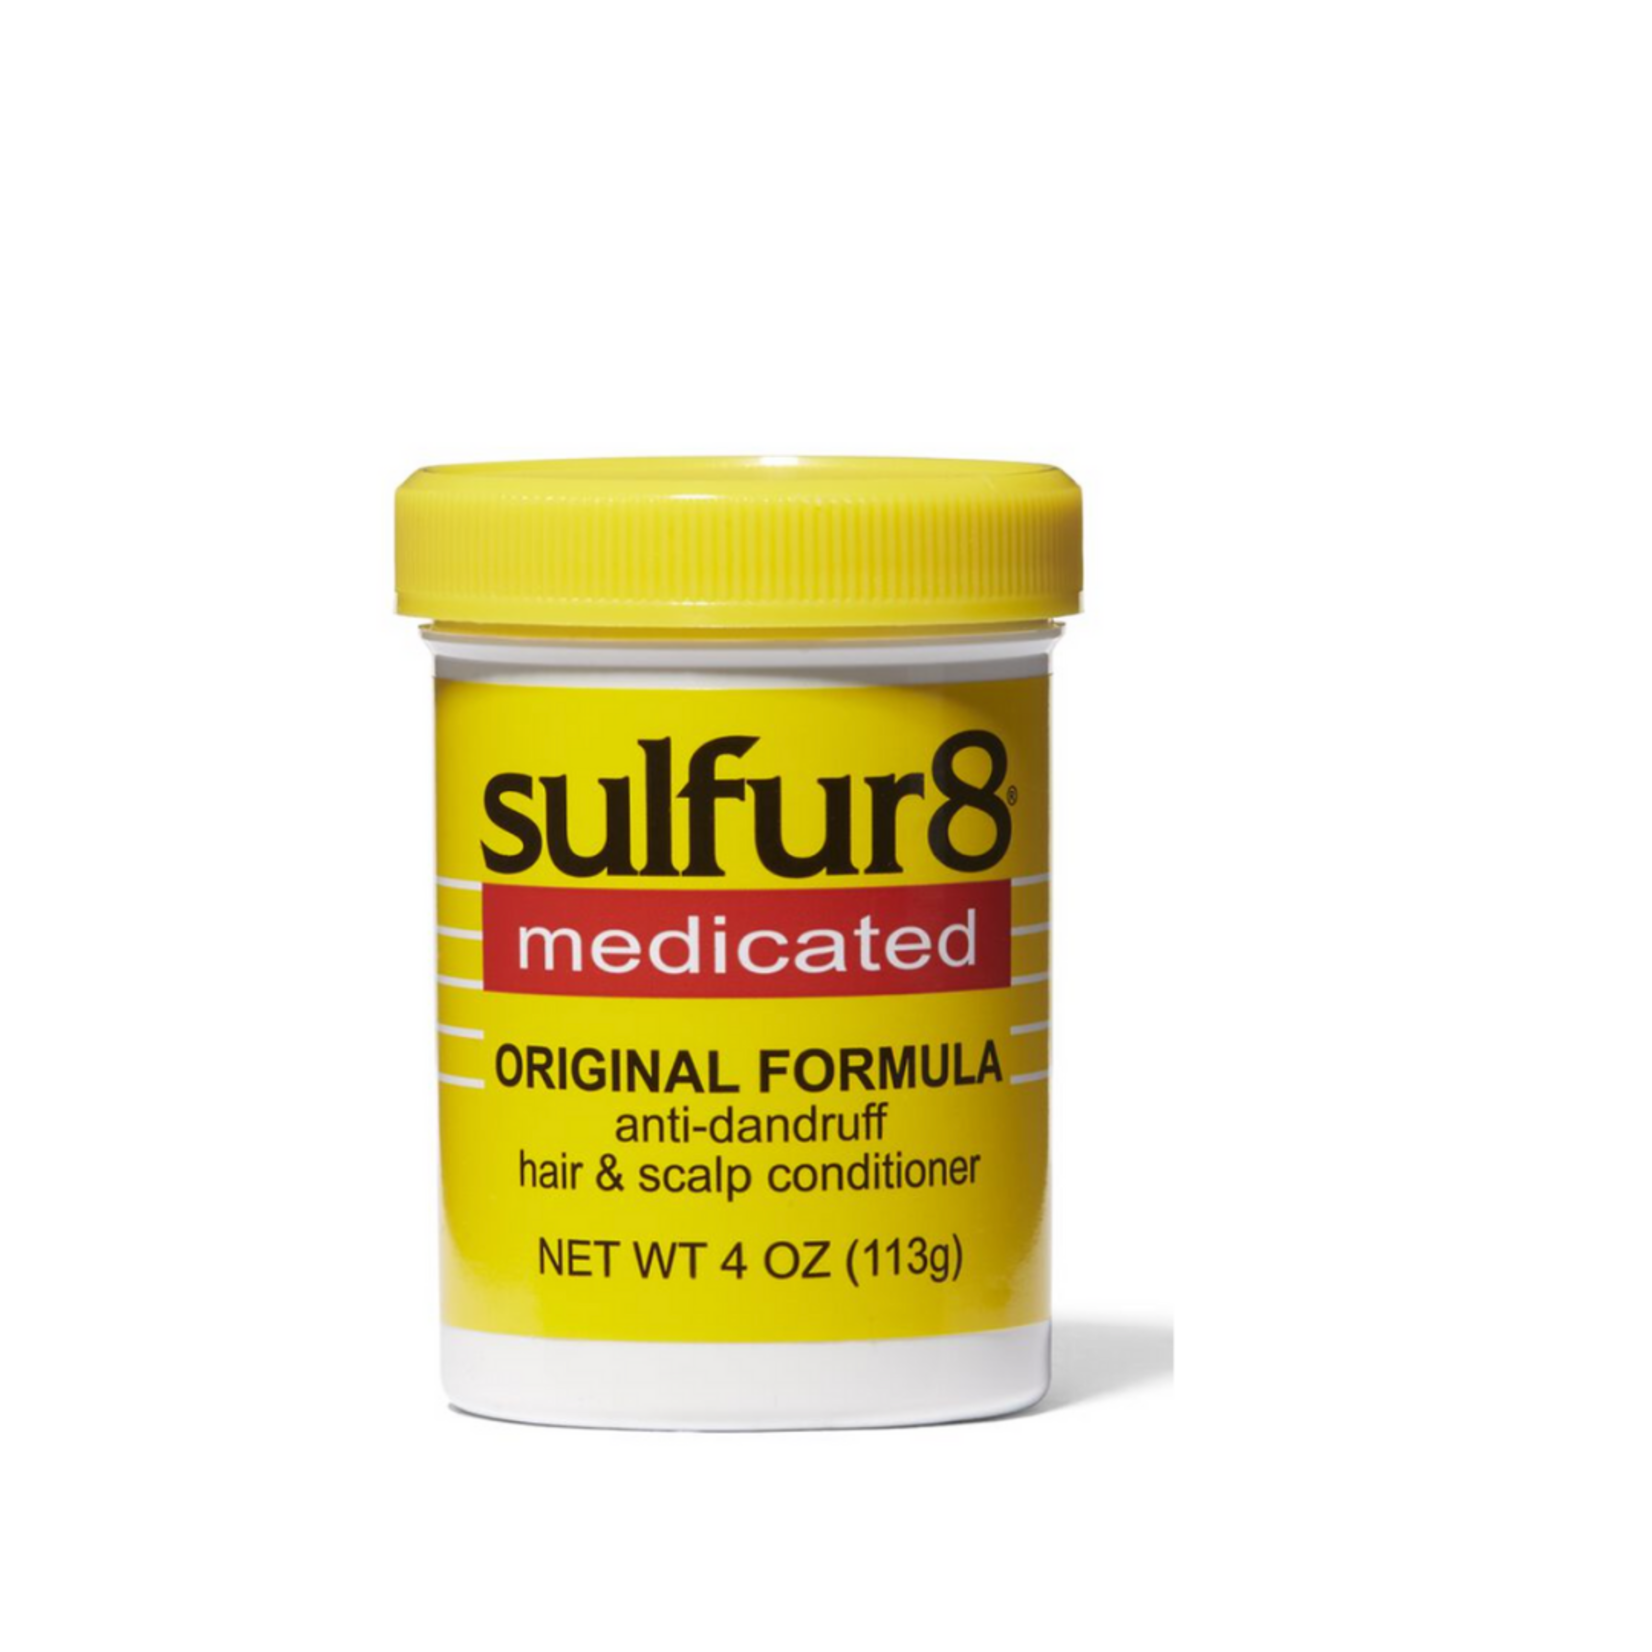 sulfur8 Sulfur8 Medicated Original Formula